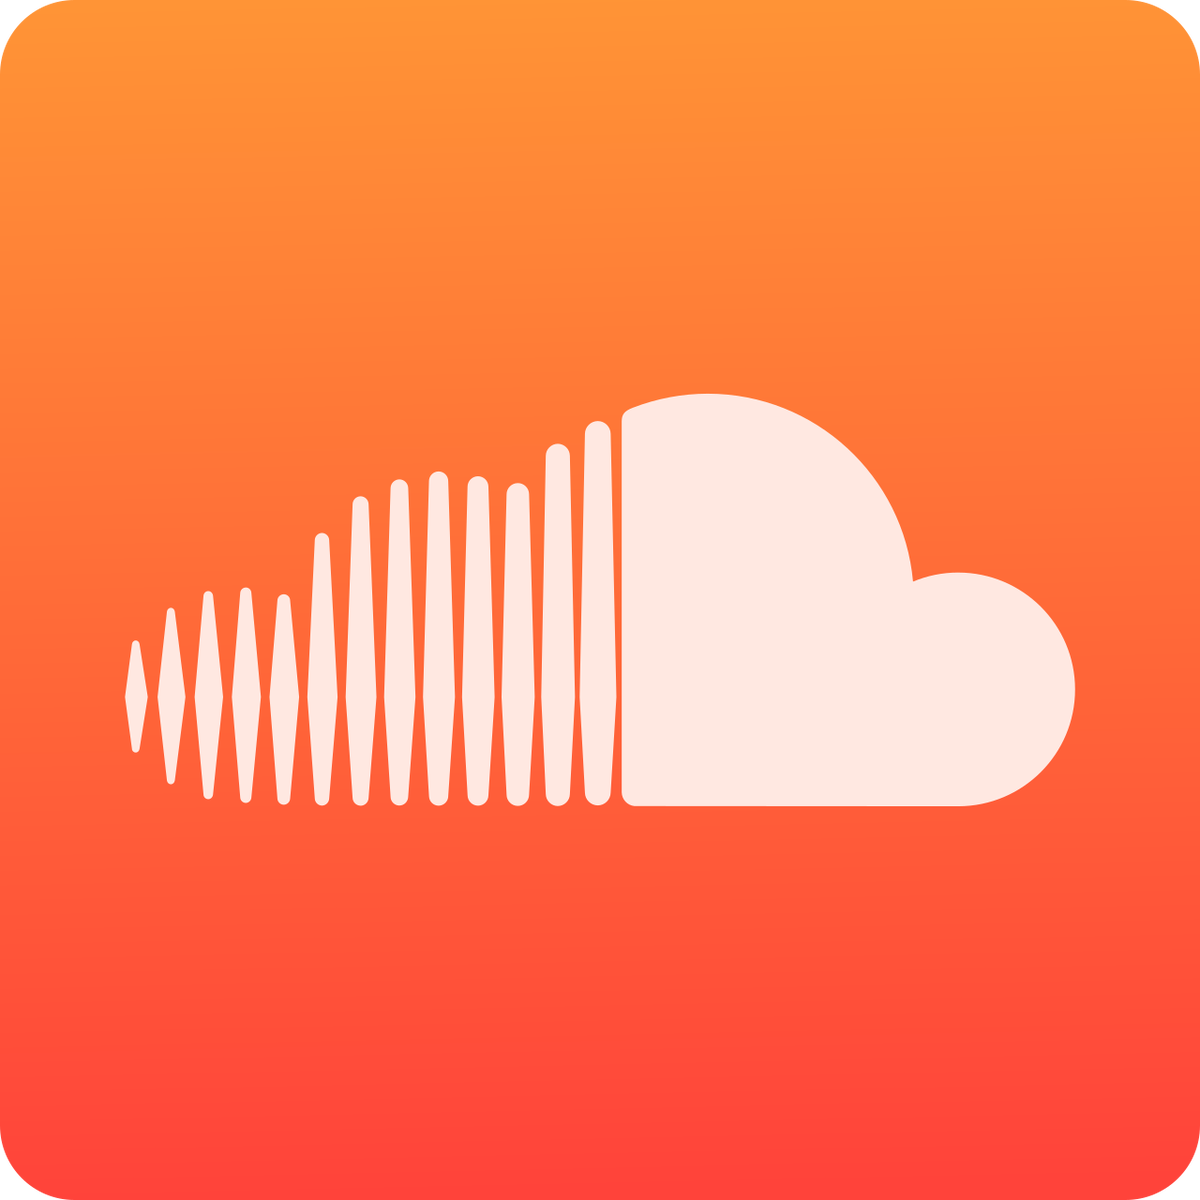 Добро пожаловать в SoundCloud Downloader! SoundCloud-это известная онлайн-платформа распространения аудио и сайт обмена музыкой, где вам разрешено загружать, продвигать и делиться песнями.